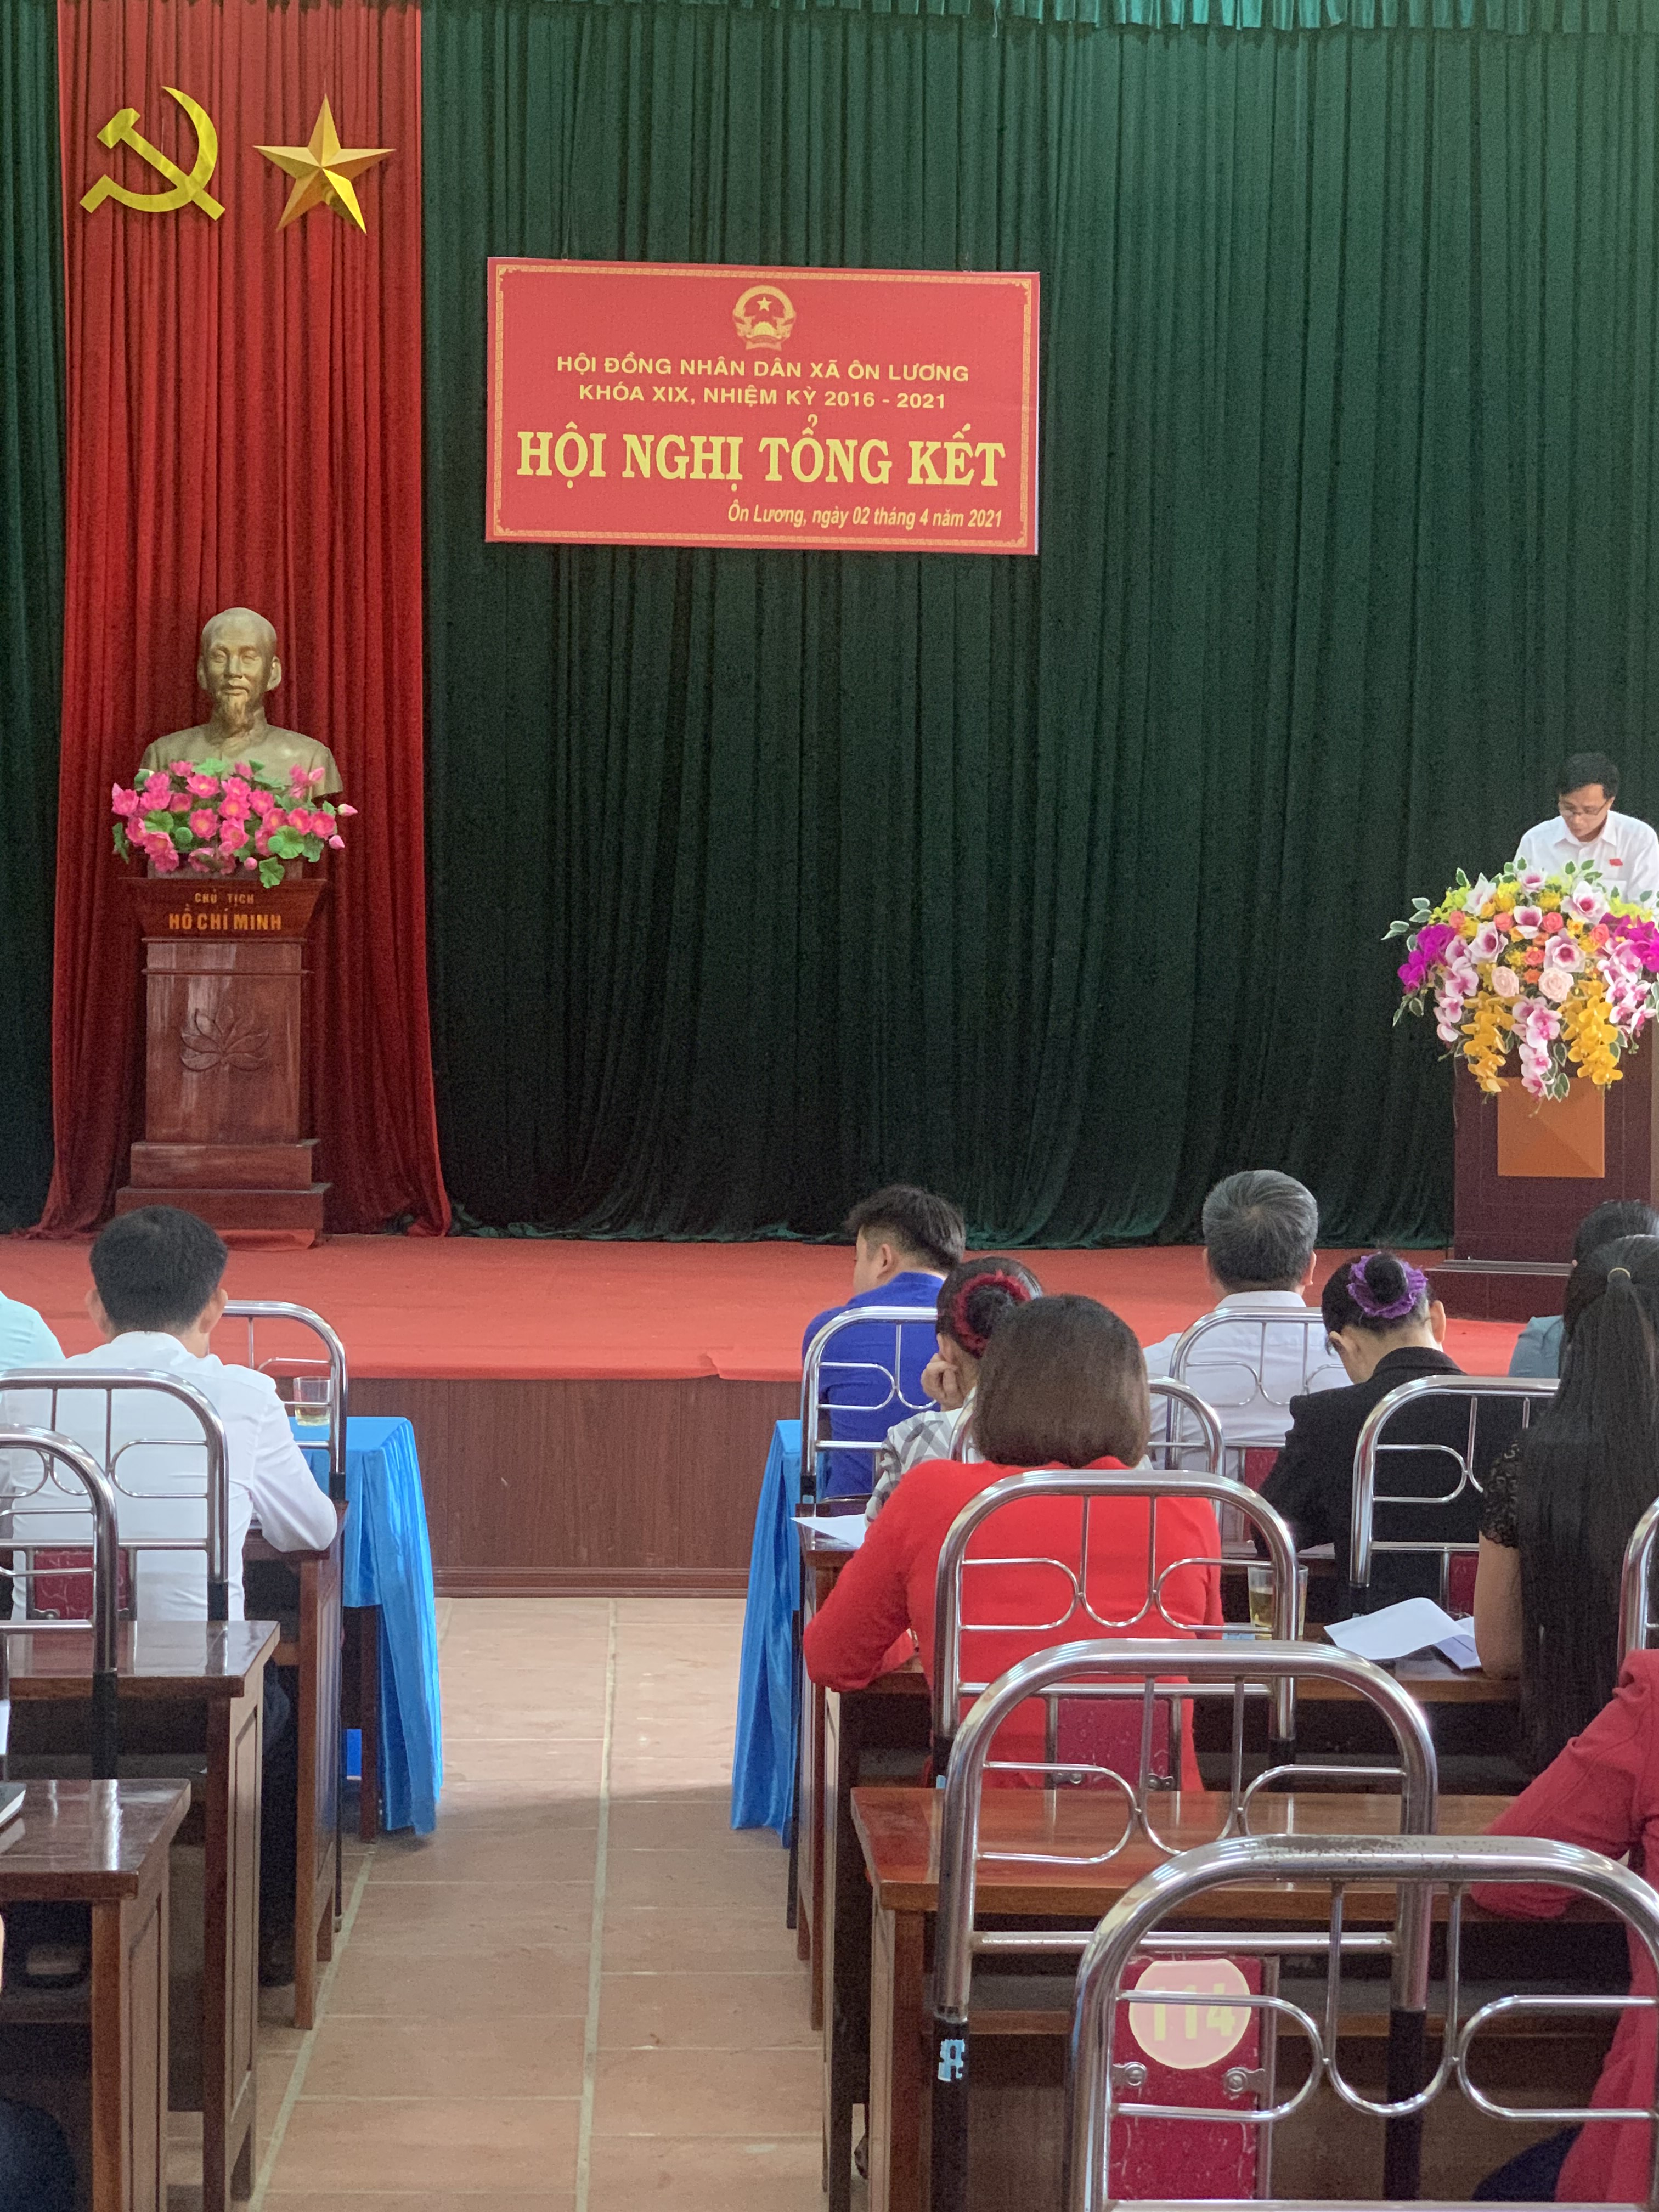 Đồng chí Nguyễn Văn Thương, Bí Thư Đảng Ủy-Chủ Tịch HĐND xã Ôn Lương duy trì thảo luận tại HN